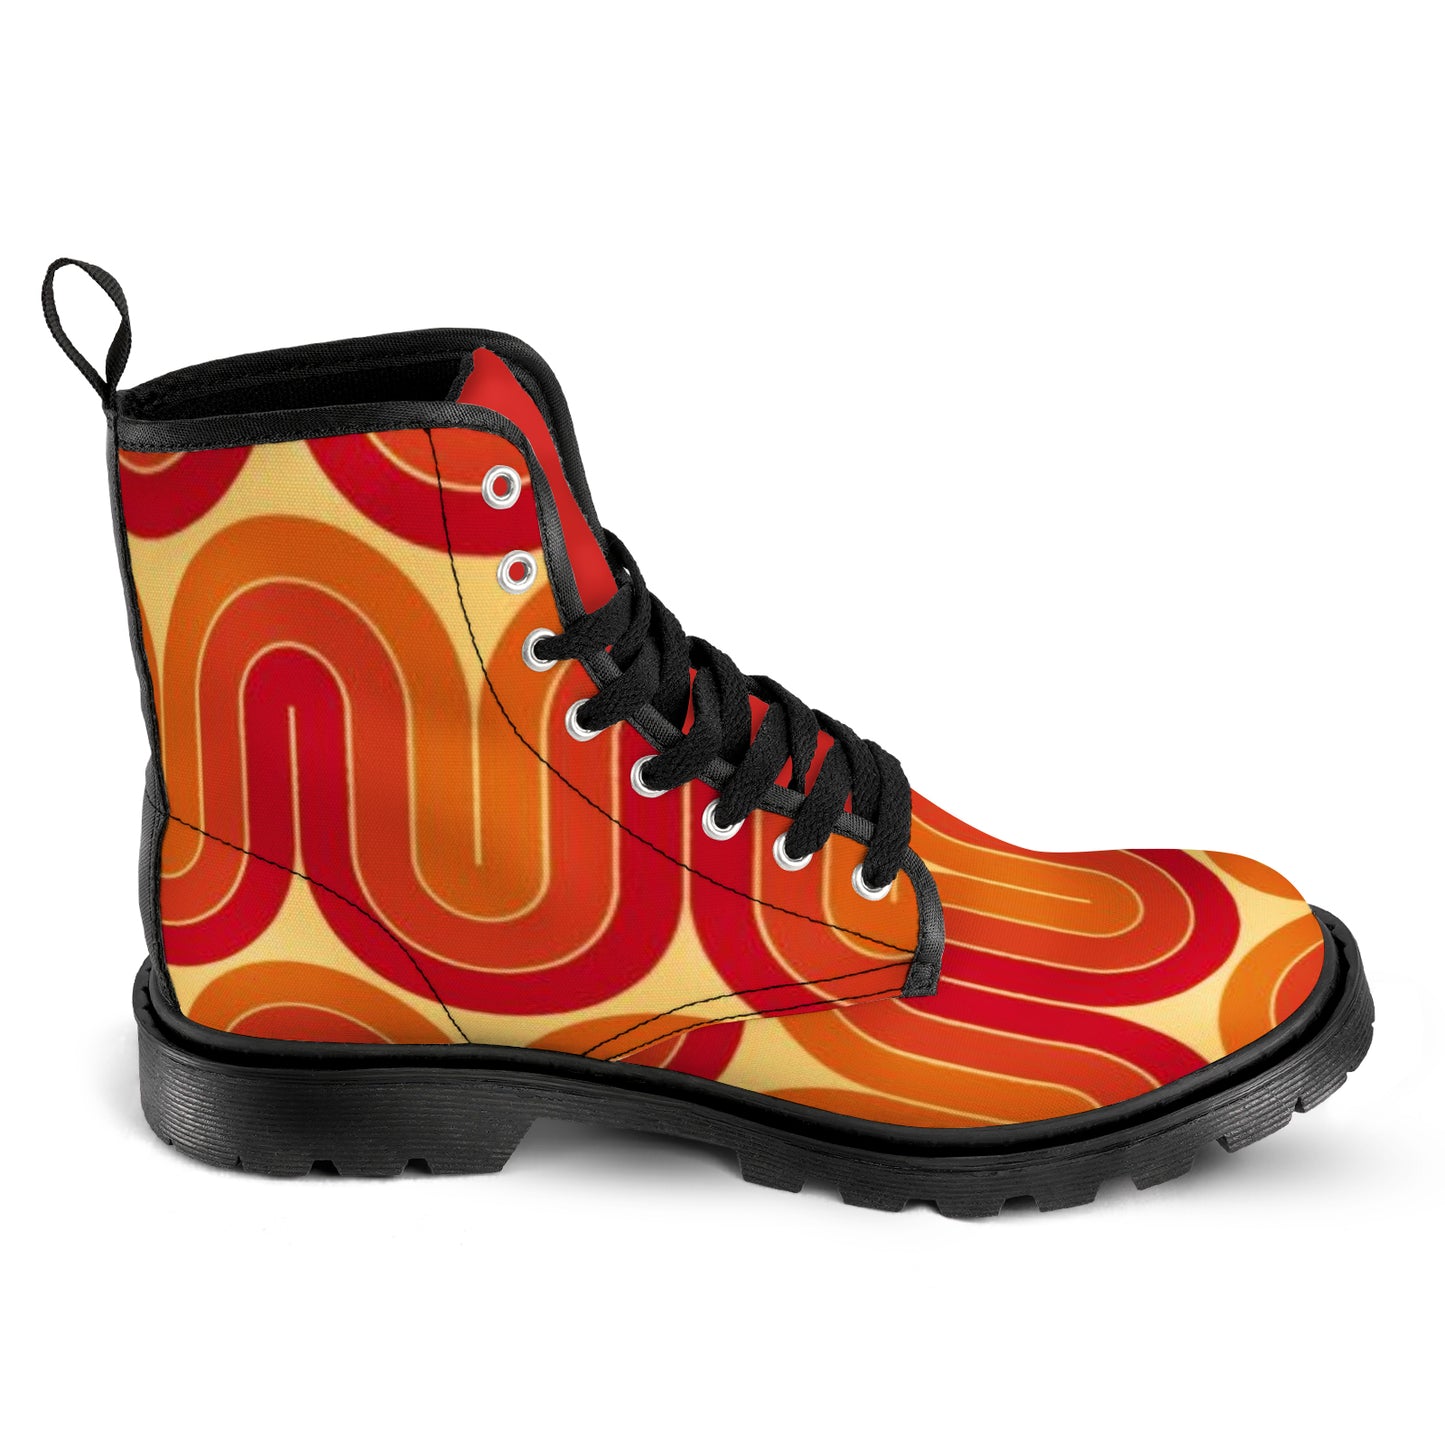 Men's Lace Up Canvas Boots - Retro (Orange & Red)